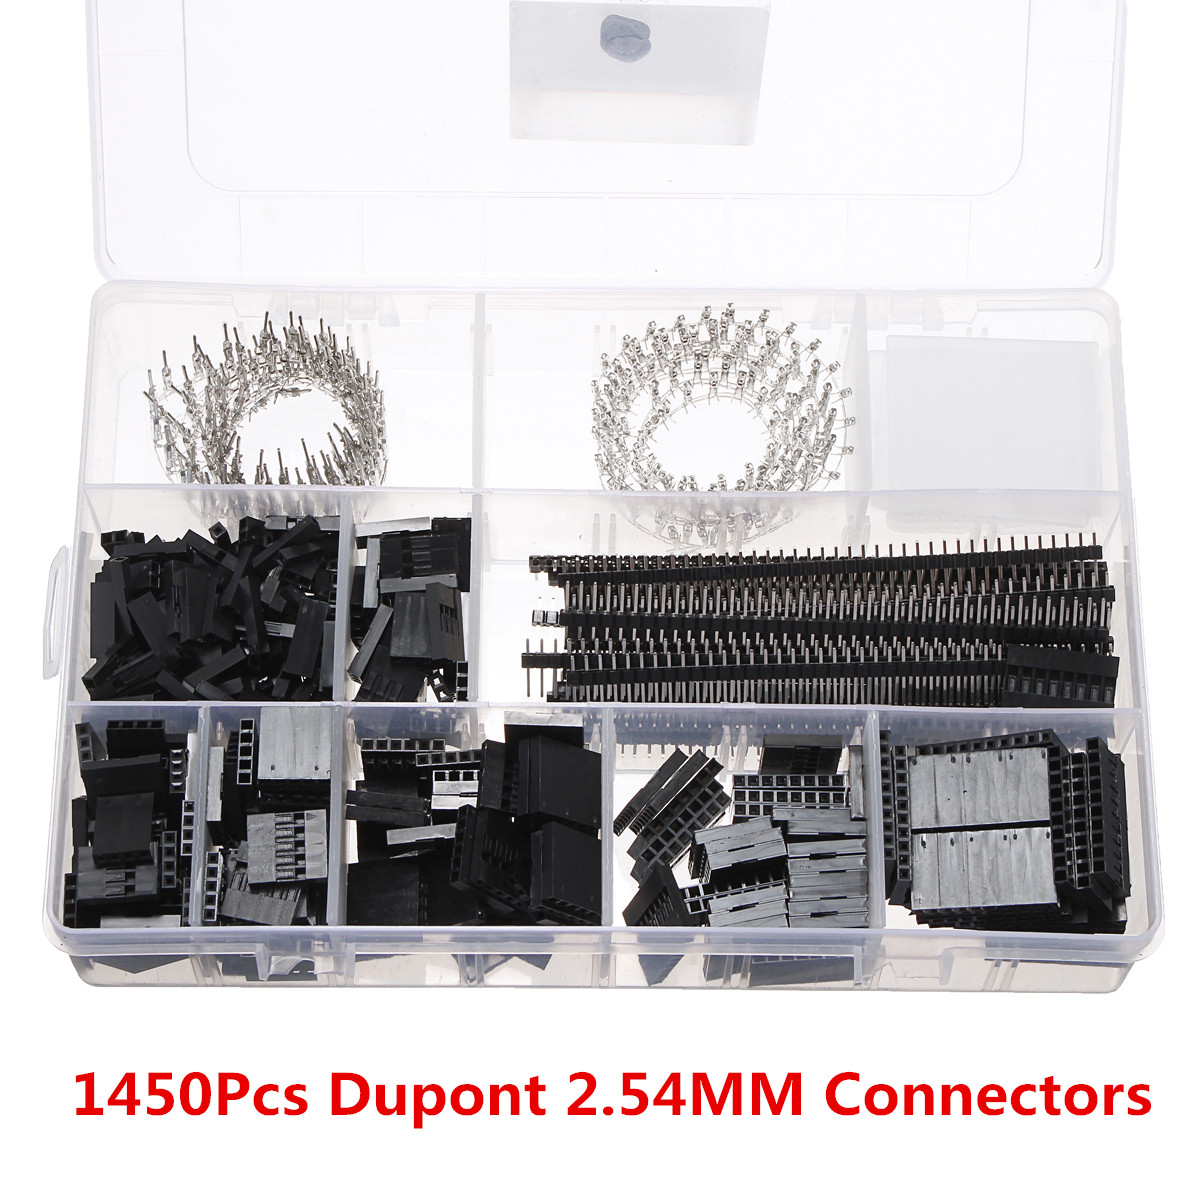 

Excellway® 1450Pcs Dupont 2.54MM Коннекторы Ассортимент Обжимной кабель Инструмент Набор Коннектор для печатных плат